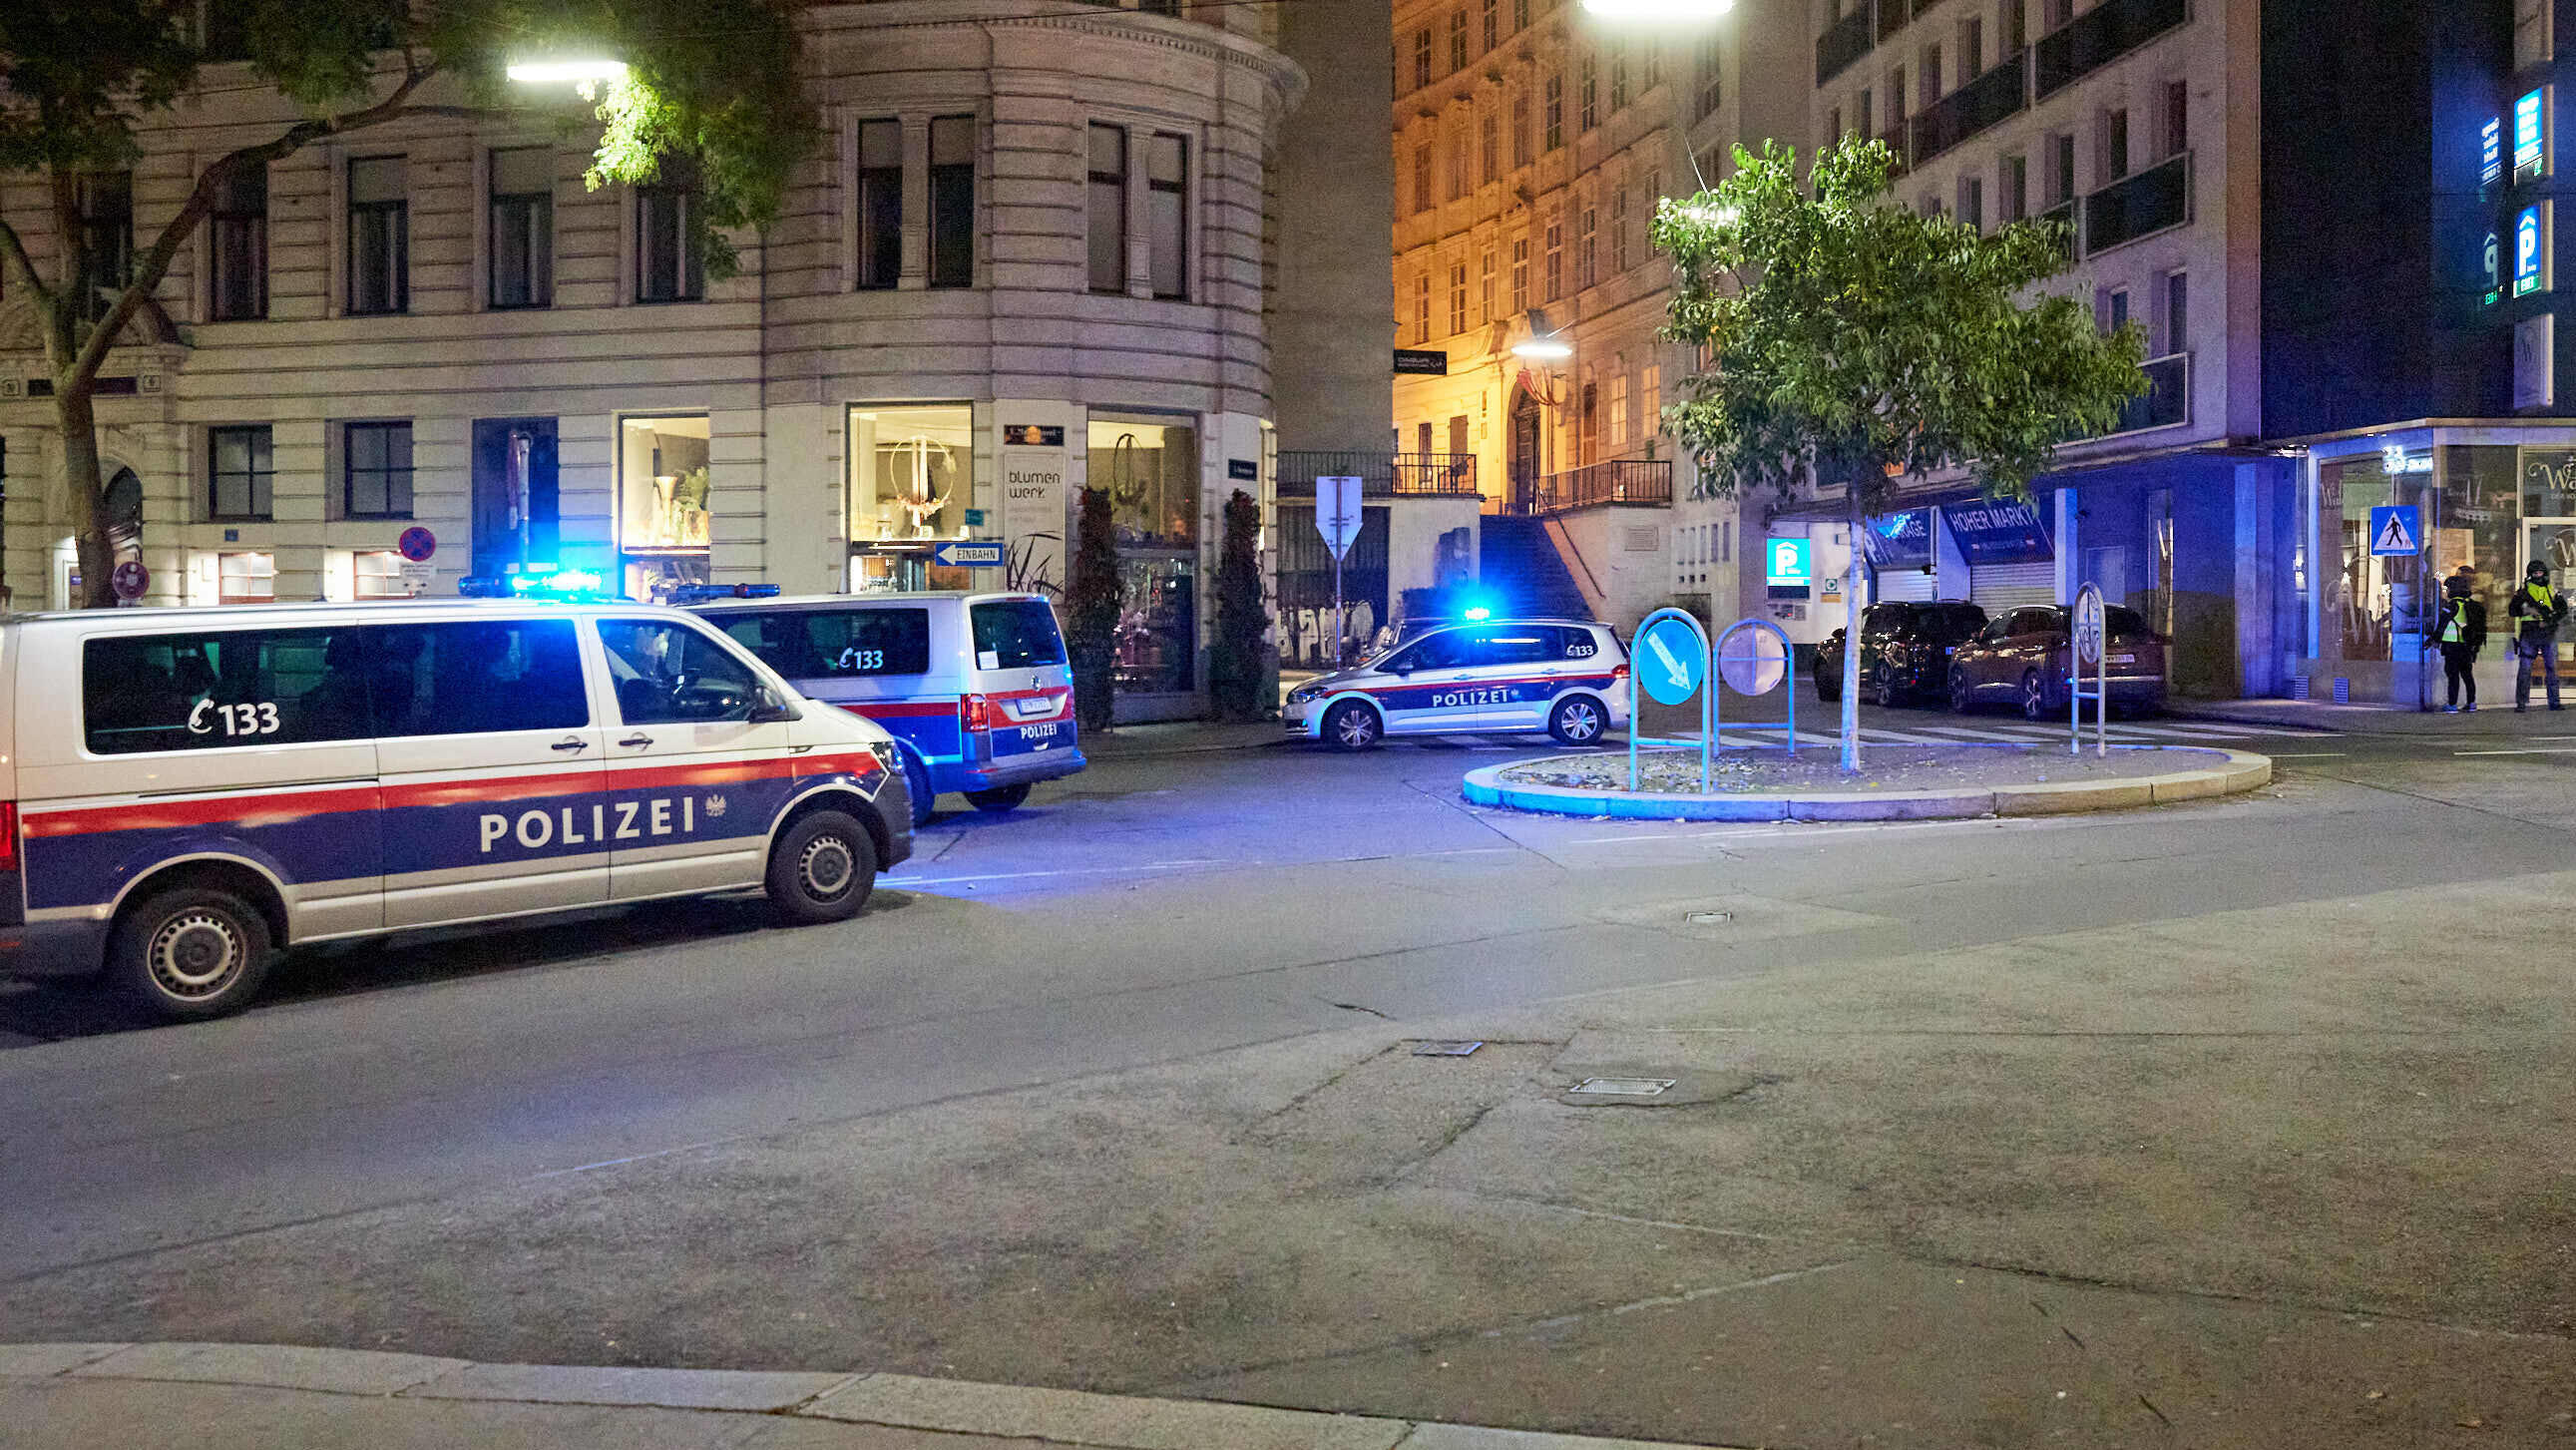  - Wien 02.11.2020 - Heute abend gab es in der Wiener Innenstadt einen Terroranschlag bei dem an mehreren Tatorten zwei Passanten getötet wurden und zumindest 15 Menschen teils schwer verletzt wurden. Einer der mutmaßlich zwei Täter wurde von der Pol